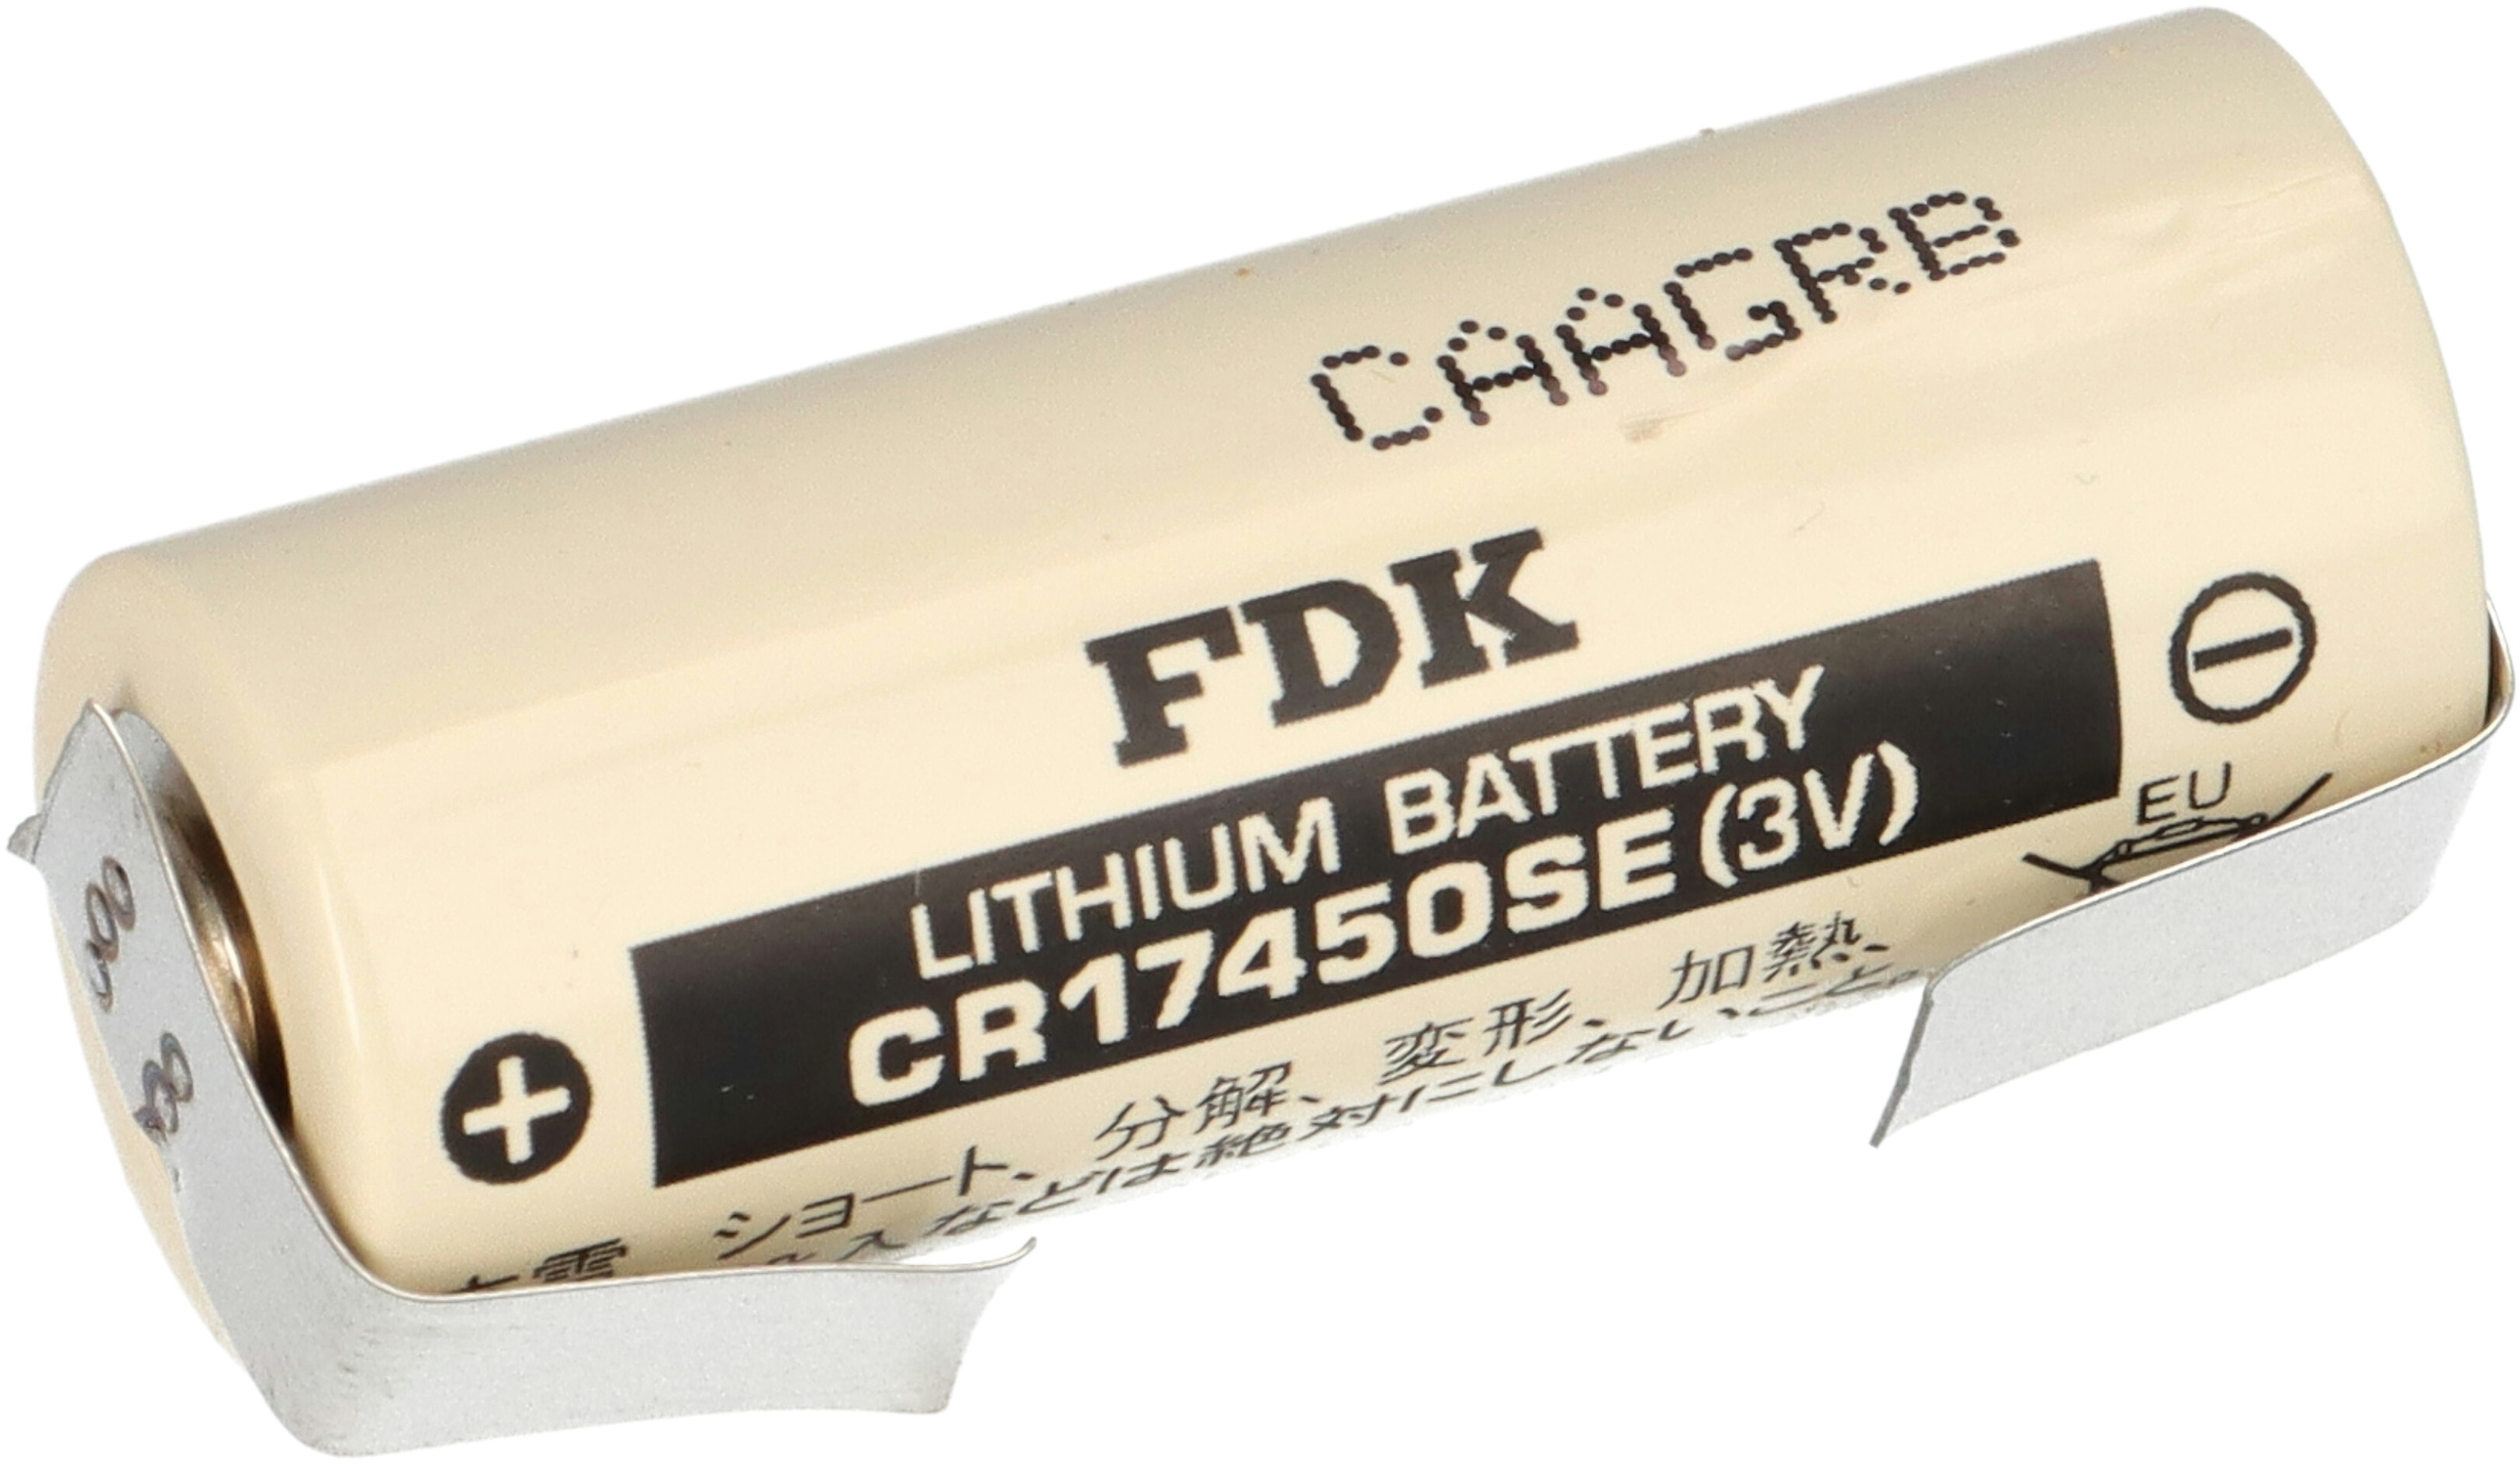 Sanyo FDK Lithium 3V Batterie CR 17450SE A - Zelle U Lötfahne Temperaturbereich -40 - +85°C